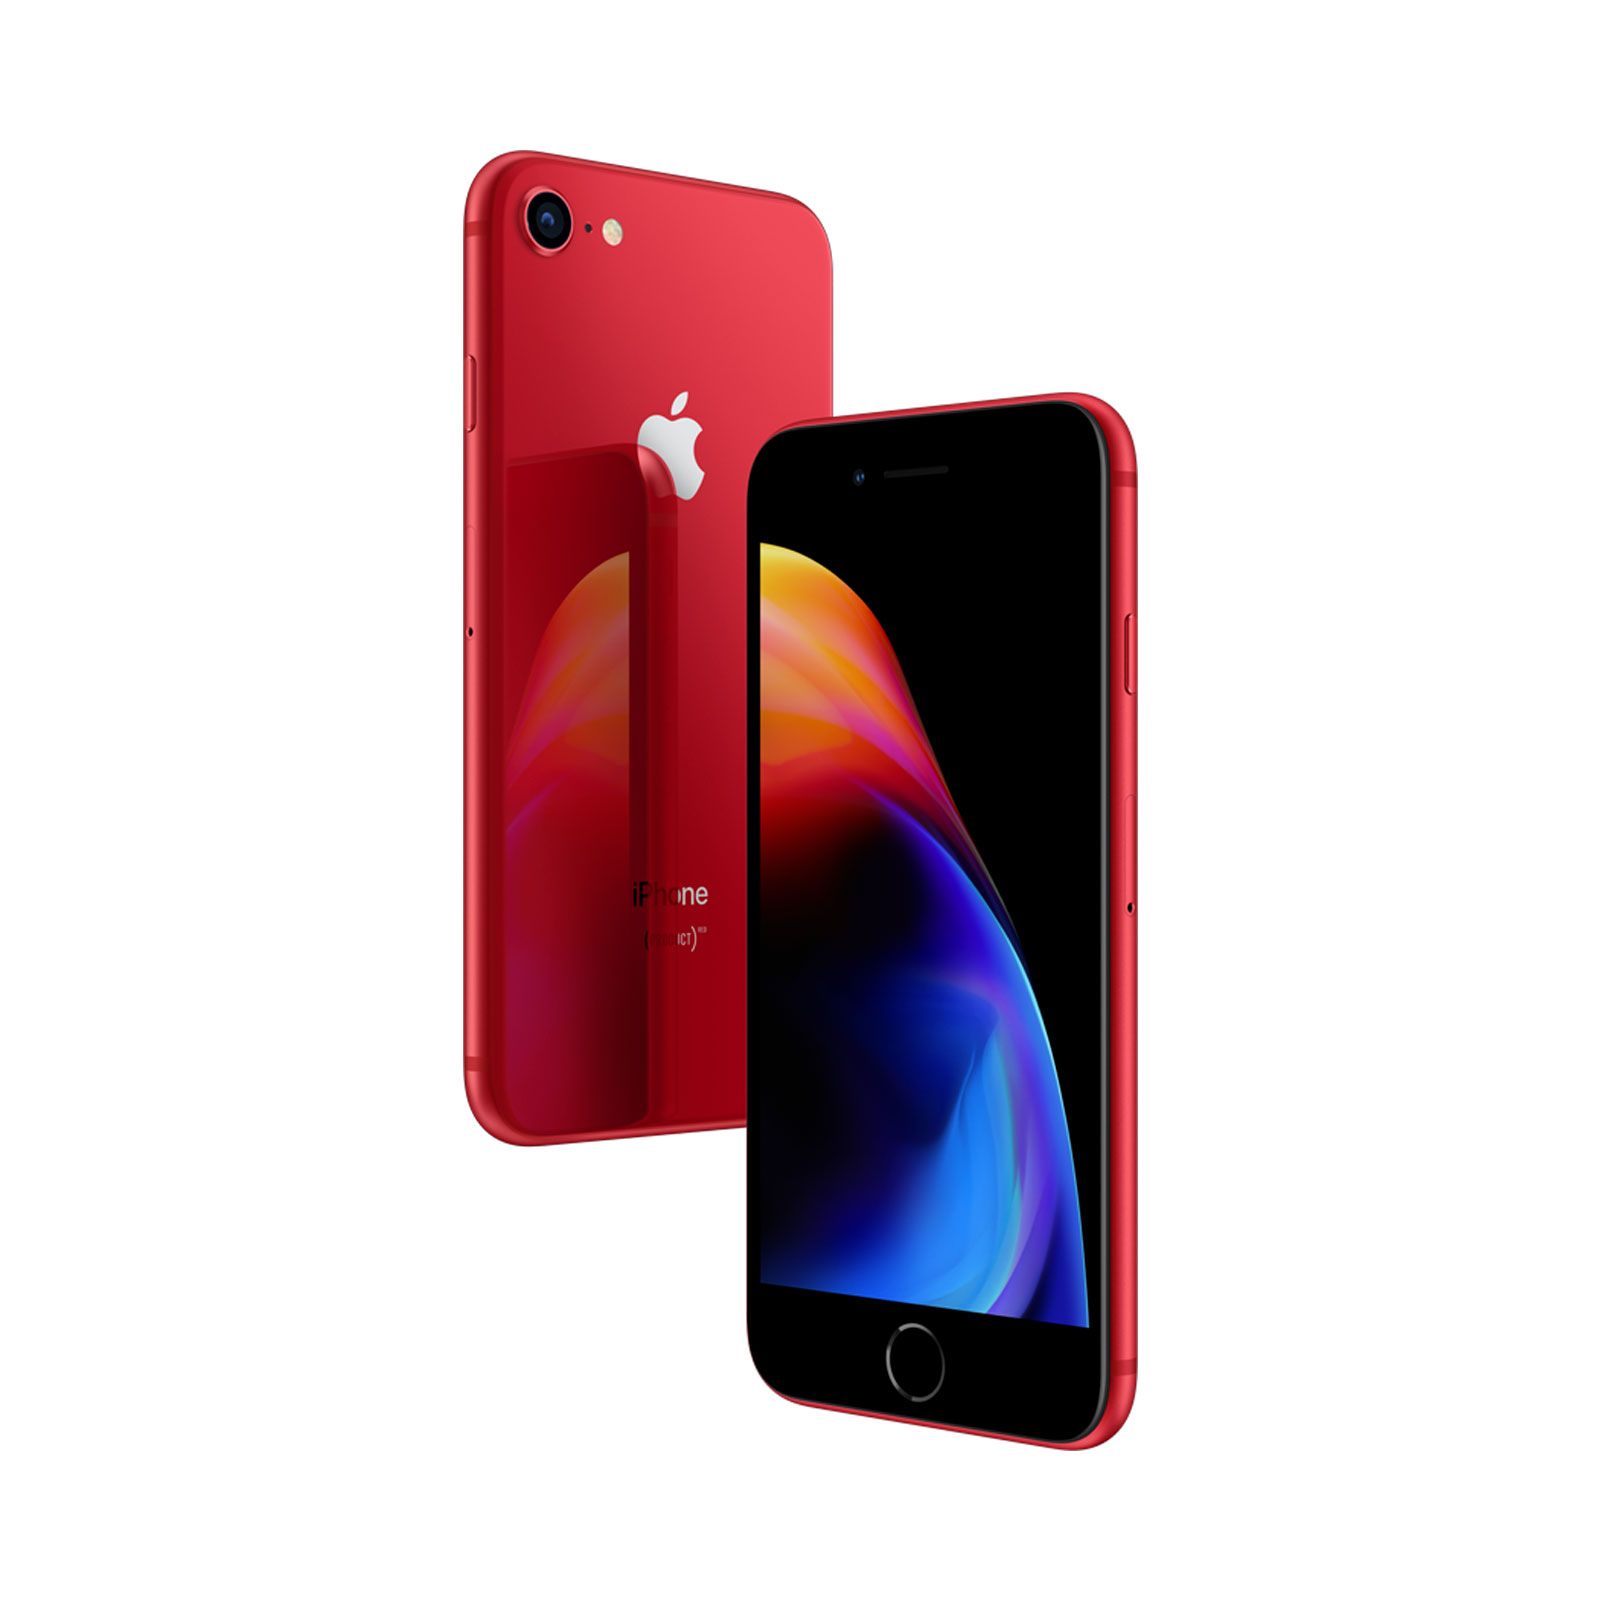 Apple iPhone 8, 64GB, (PRODUCT)RED, Trieda B - použité, záruka 12 mesiacov